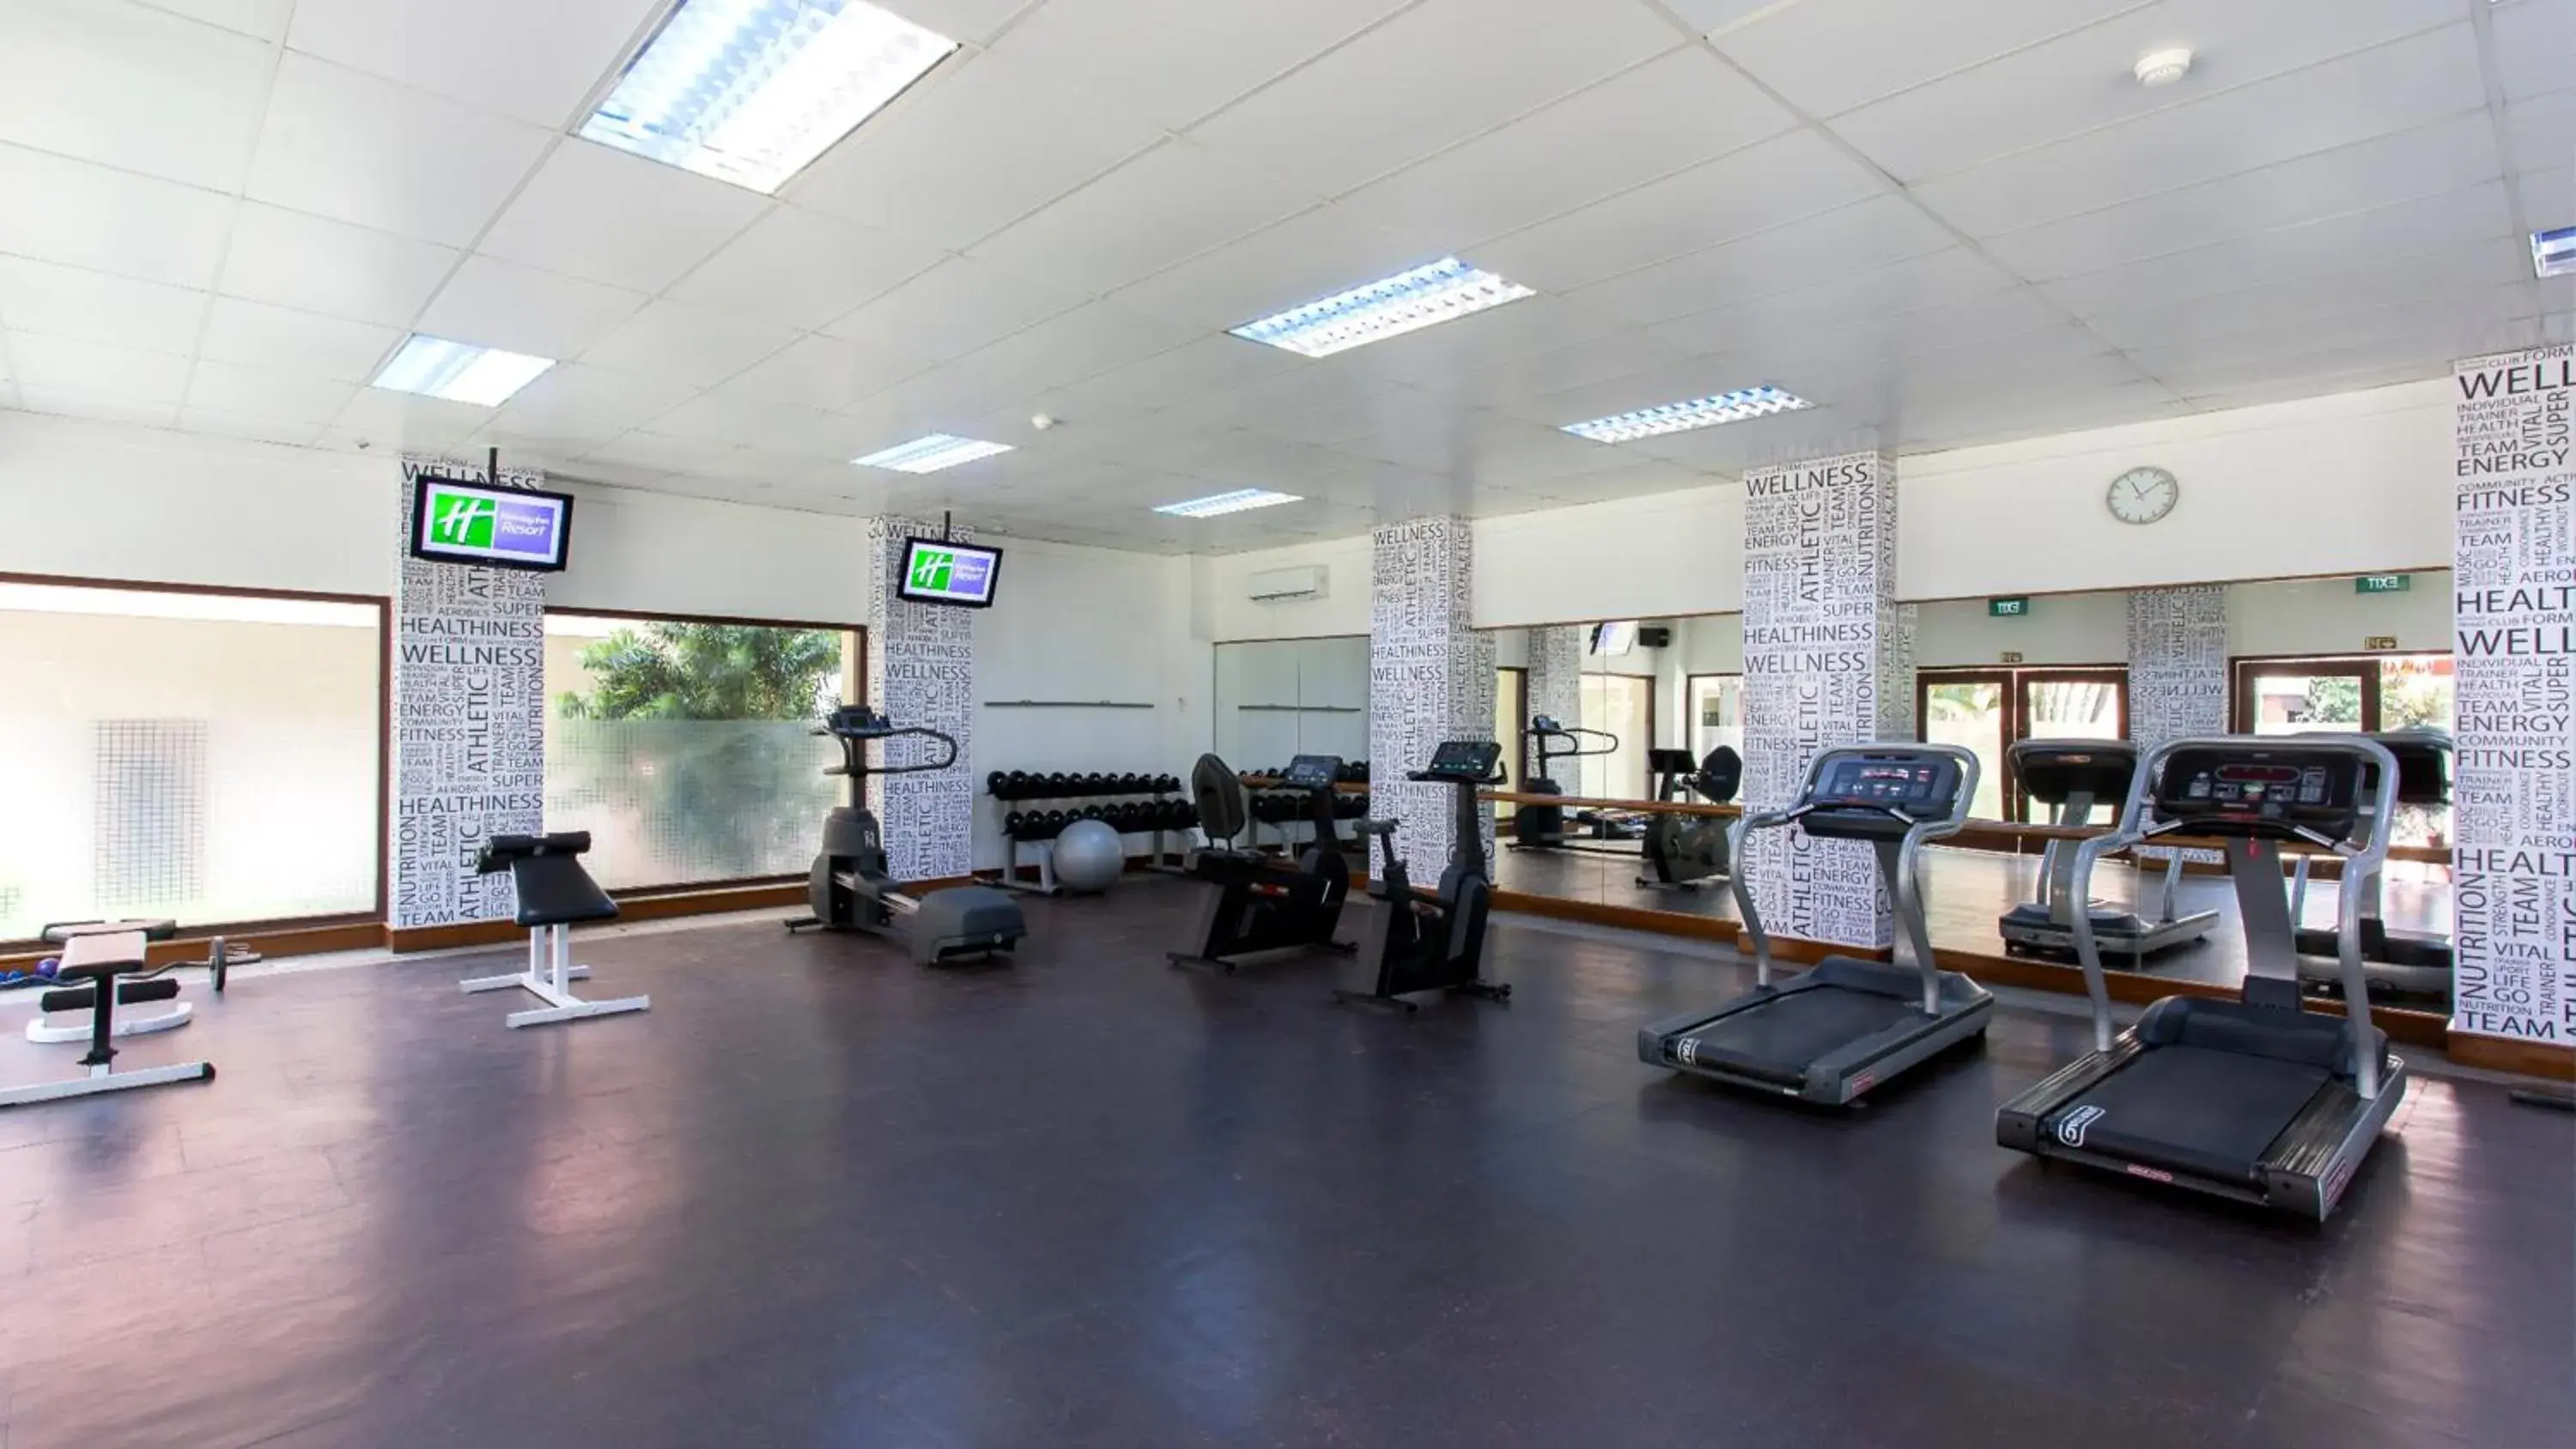 Fitness centre/facilities, Fitness Center/Facilities in Holiday Inn Resort Batam, an IHG Hotel